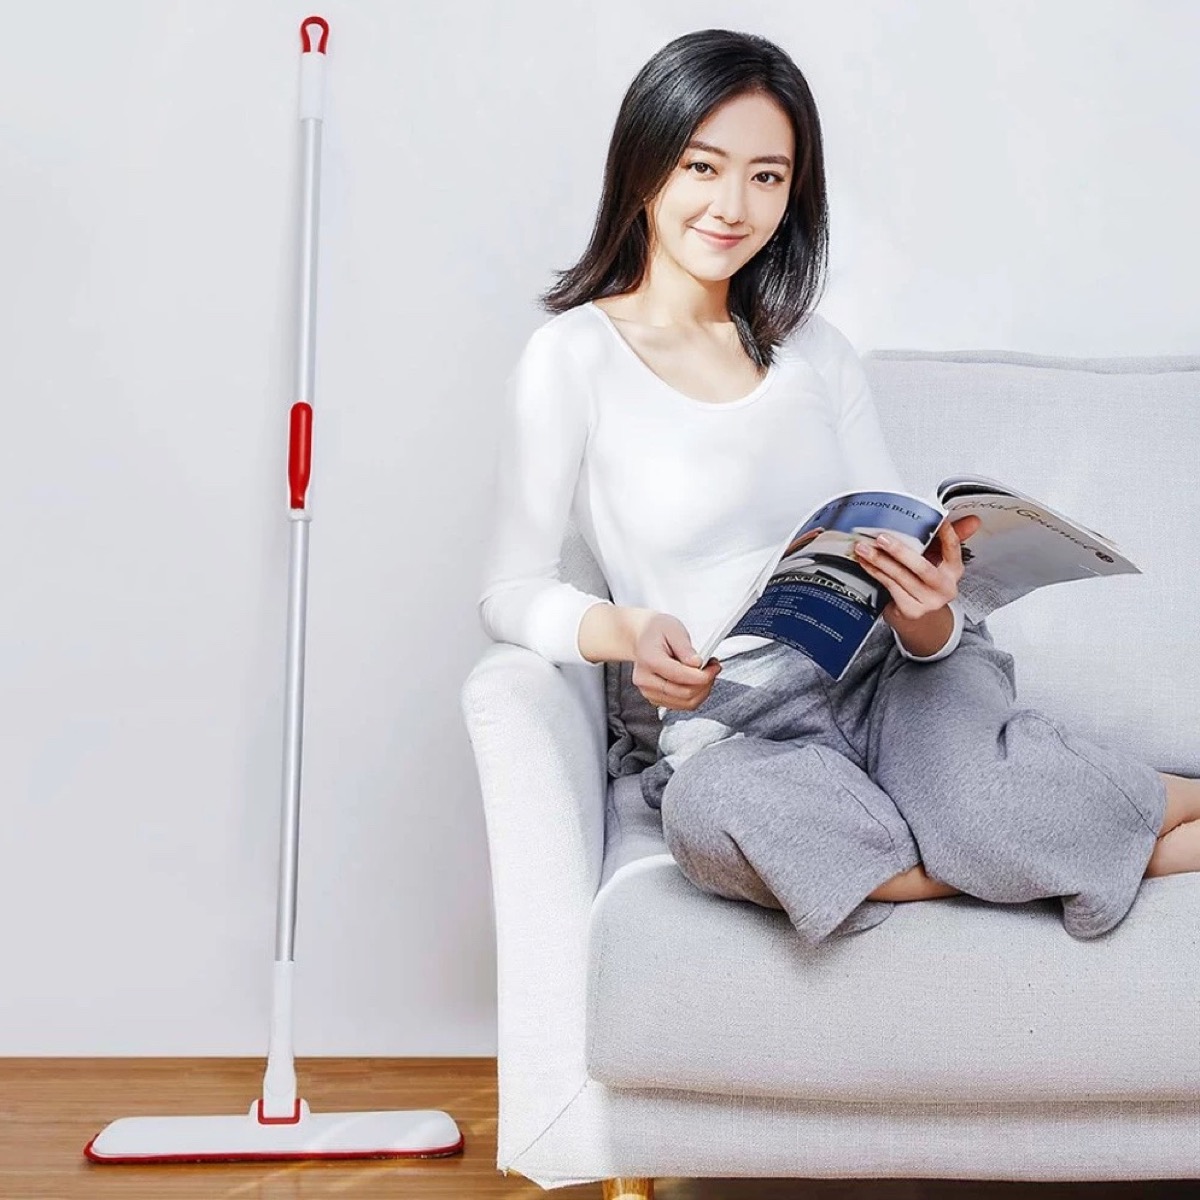 Yijie Slim Flat Mop 360, il mocio Xiaomi che lava a 360 gradi in offerta a 11,15 euro